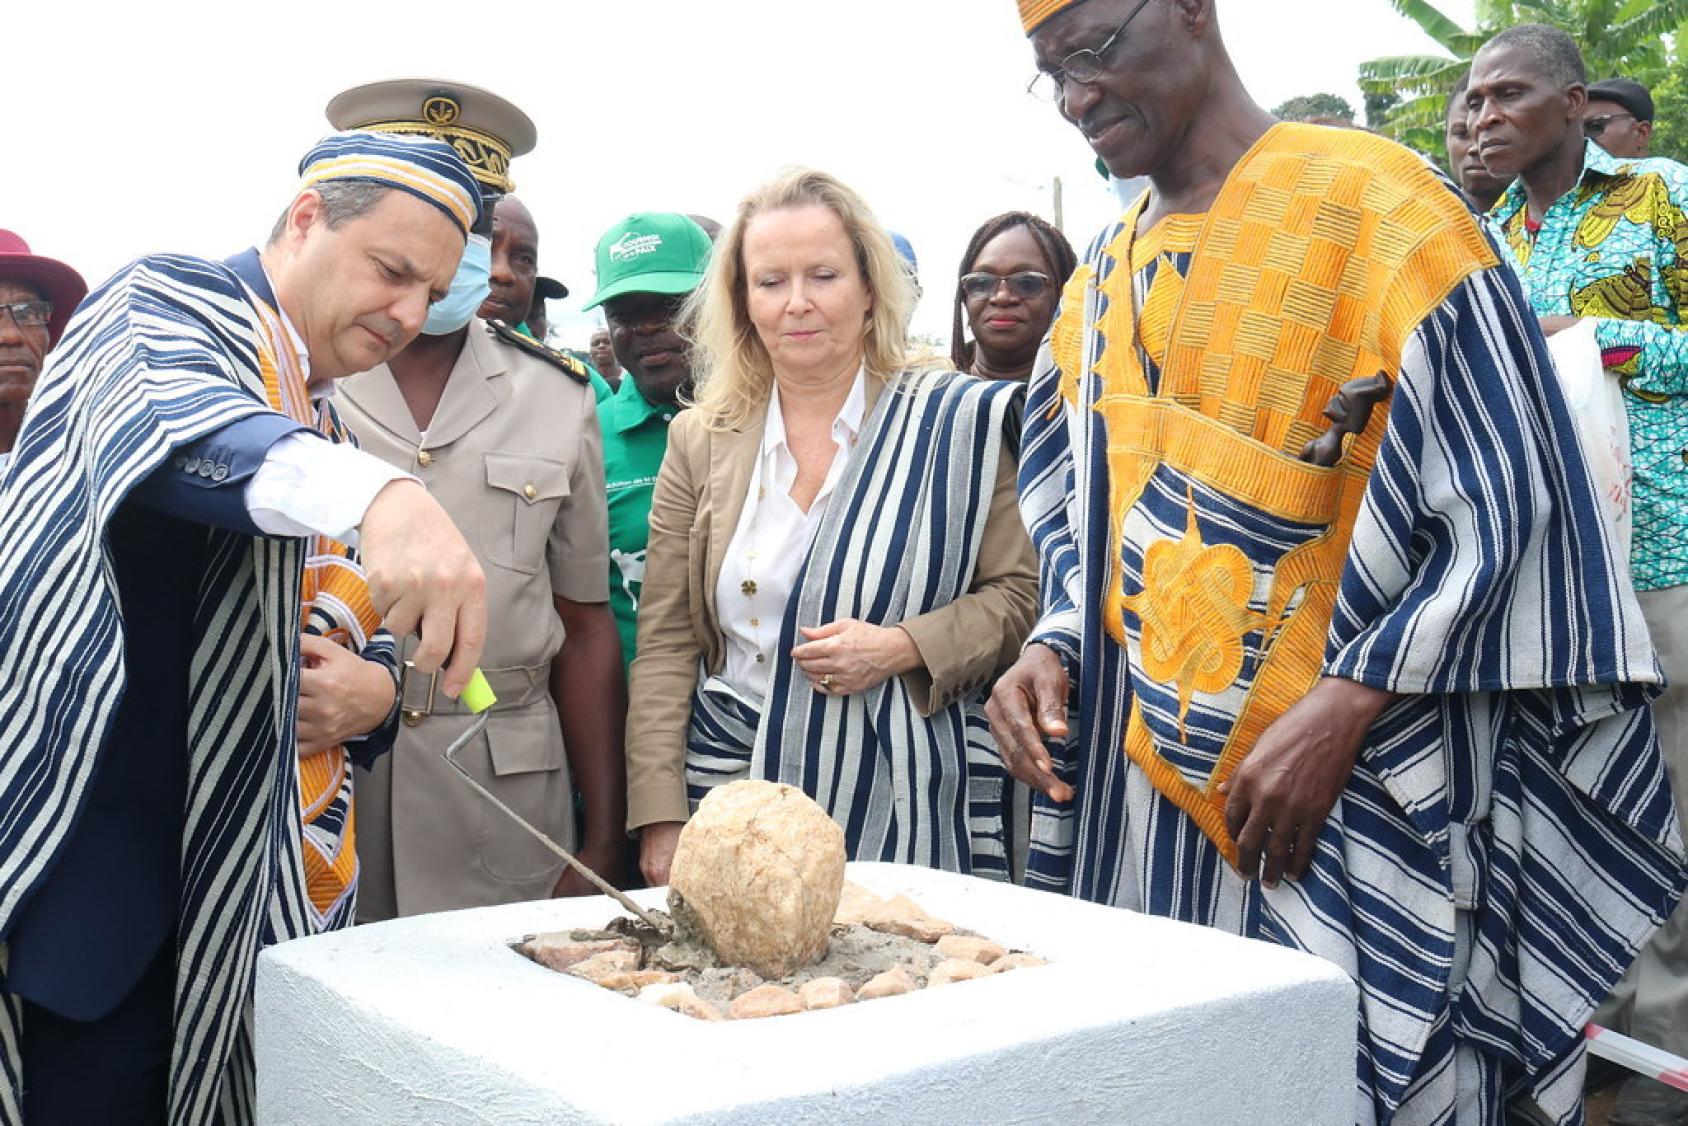 Постоянный координатор ООН Филипп Пуансо закладывает первый камень в фундамент многофункциональной мельницы. Одетый в традиционный ивуарийский наряд, он стоит рядом с представителем ЮНЕСКО в Кот-д'Ивуаре и главой района Бьянкума, также одетым в традиционный наряд.